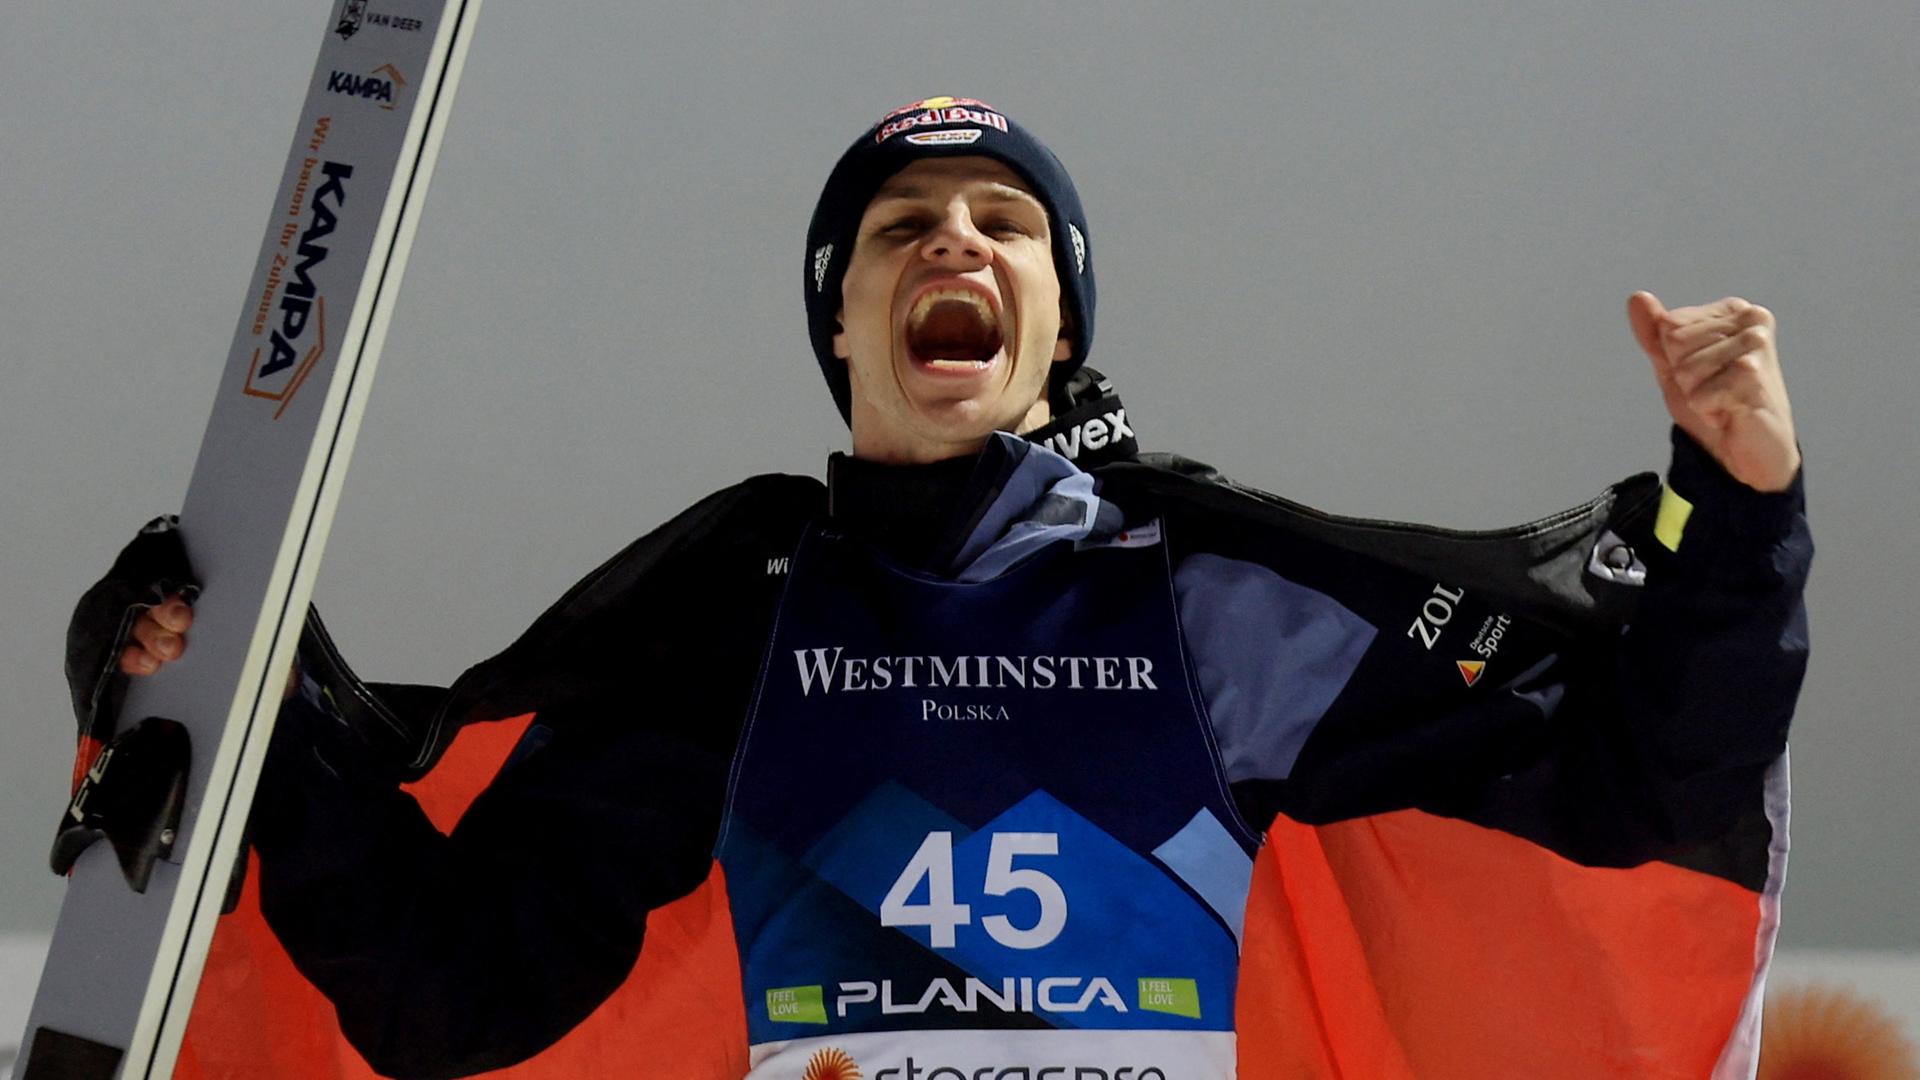 FIS Nordische Skiweltmeisterschaften - Planica, Slowenien - 25.02.2023. Der Deutsche Andreas Wellinger feiert auf dem Podium, nachdem er bei den Herren HS102 Zweiter wurde